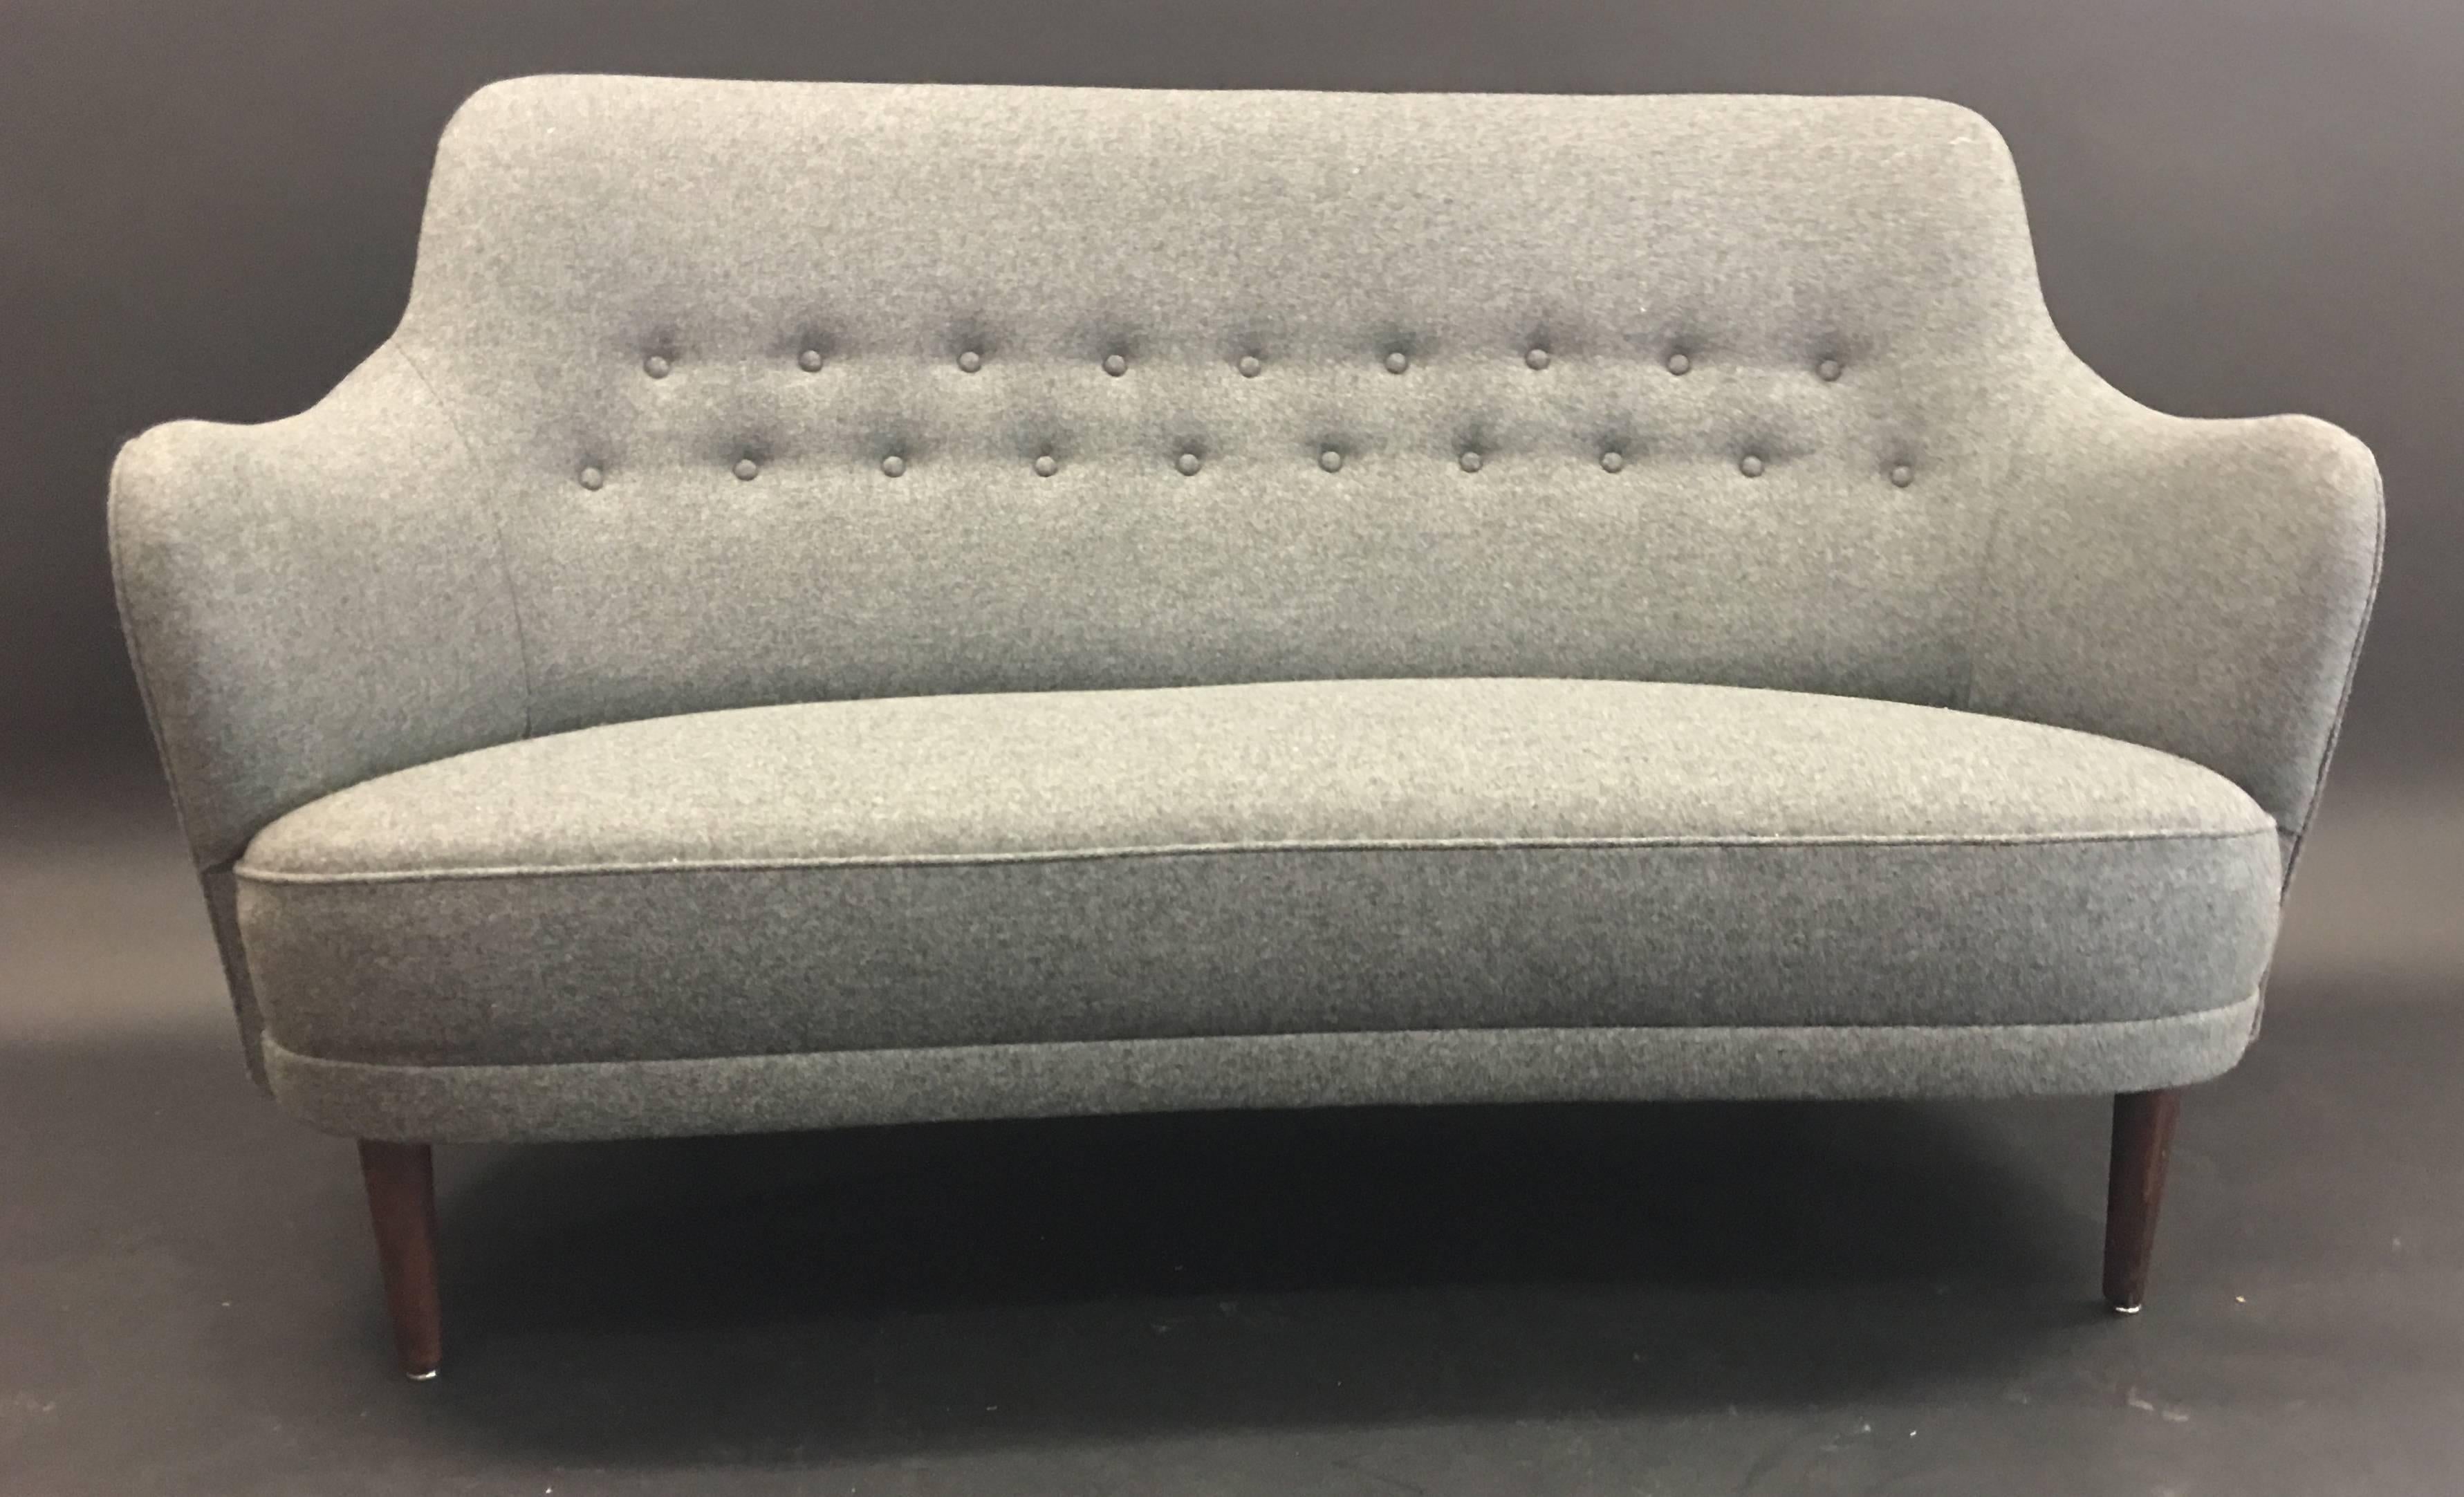 Canapé à deux places en laine grise de qualité, joliment retapissé, par Carl Malmsten pour O.H. Sjogren de Suède.
Un canapé classique, confortable, scandy cool.